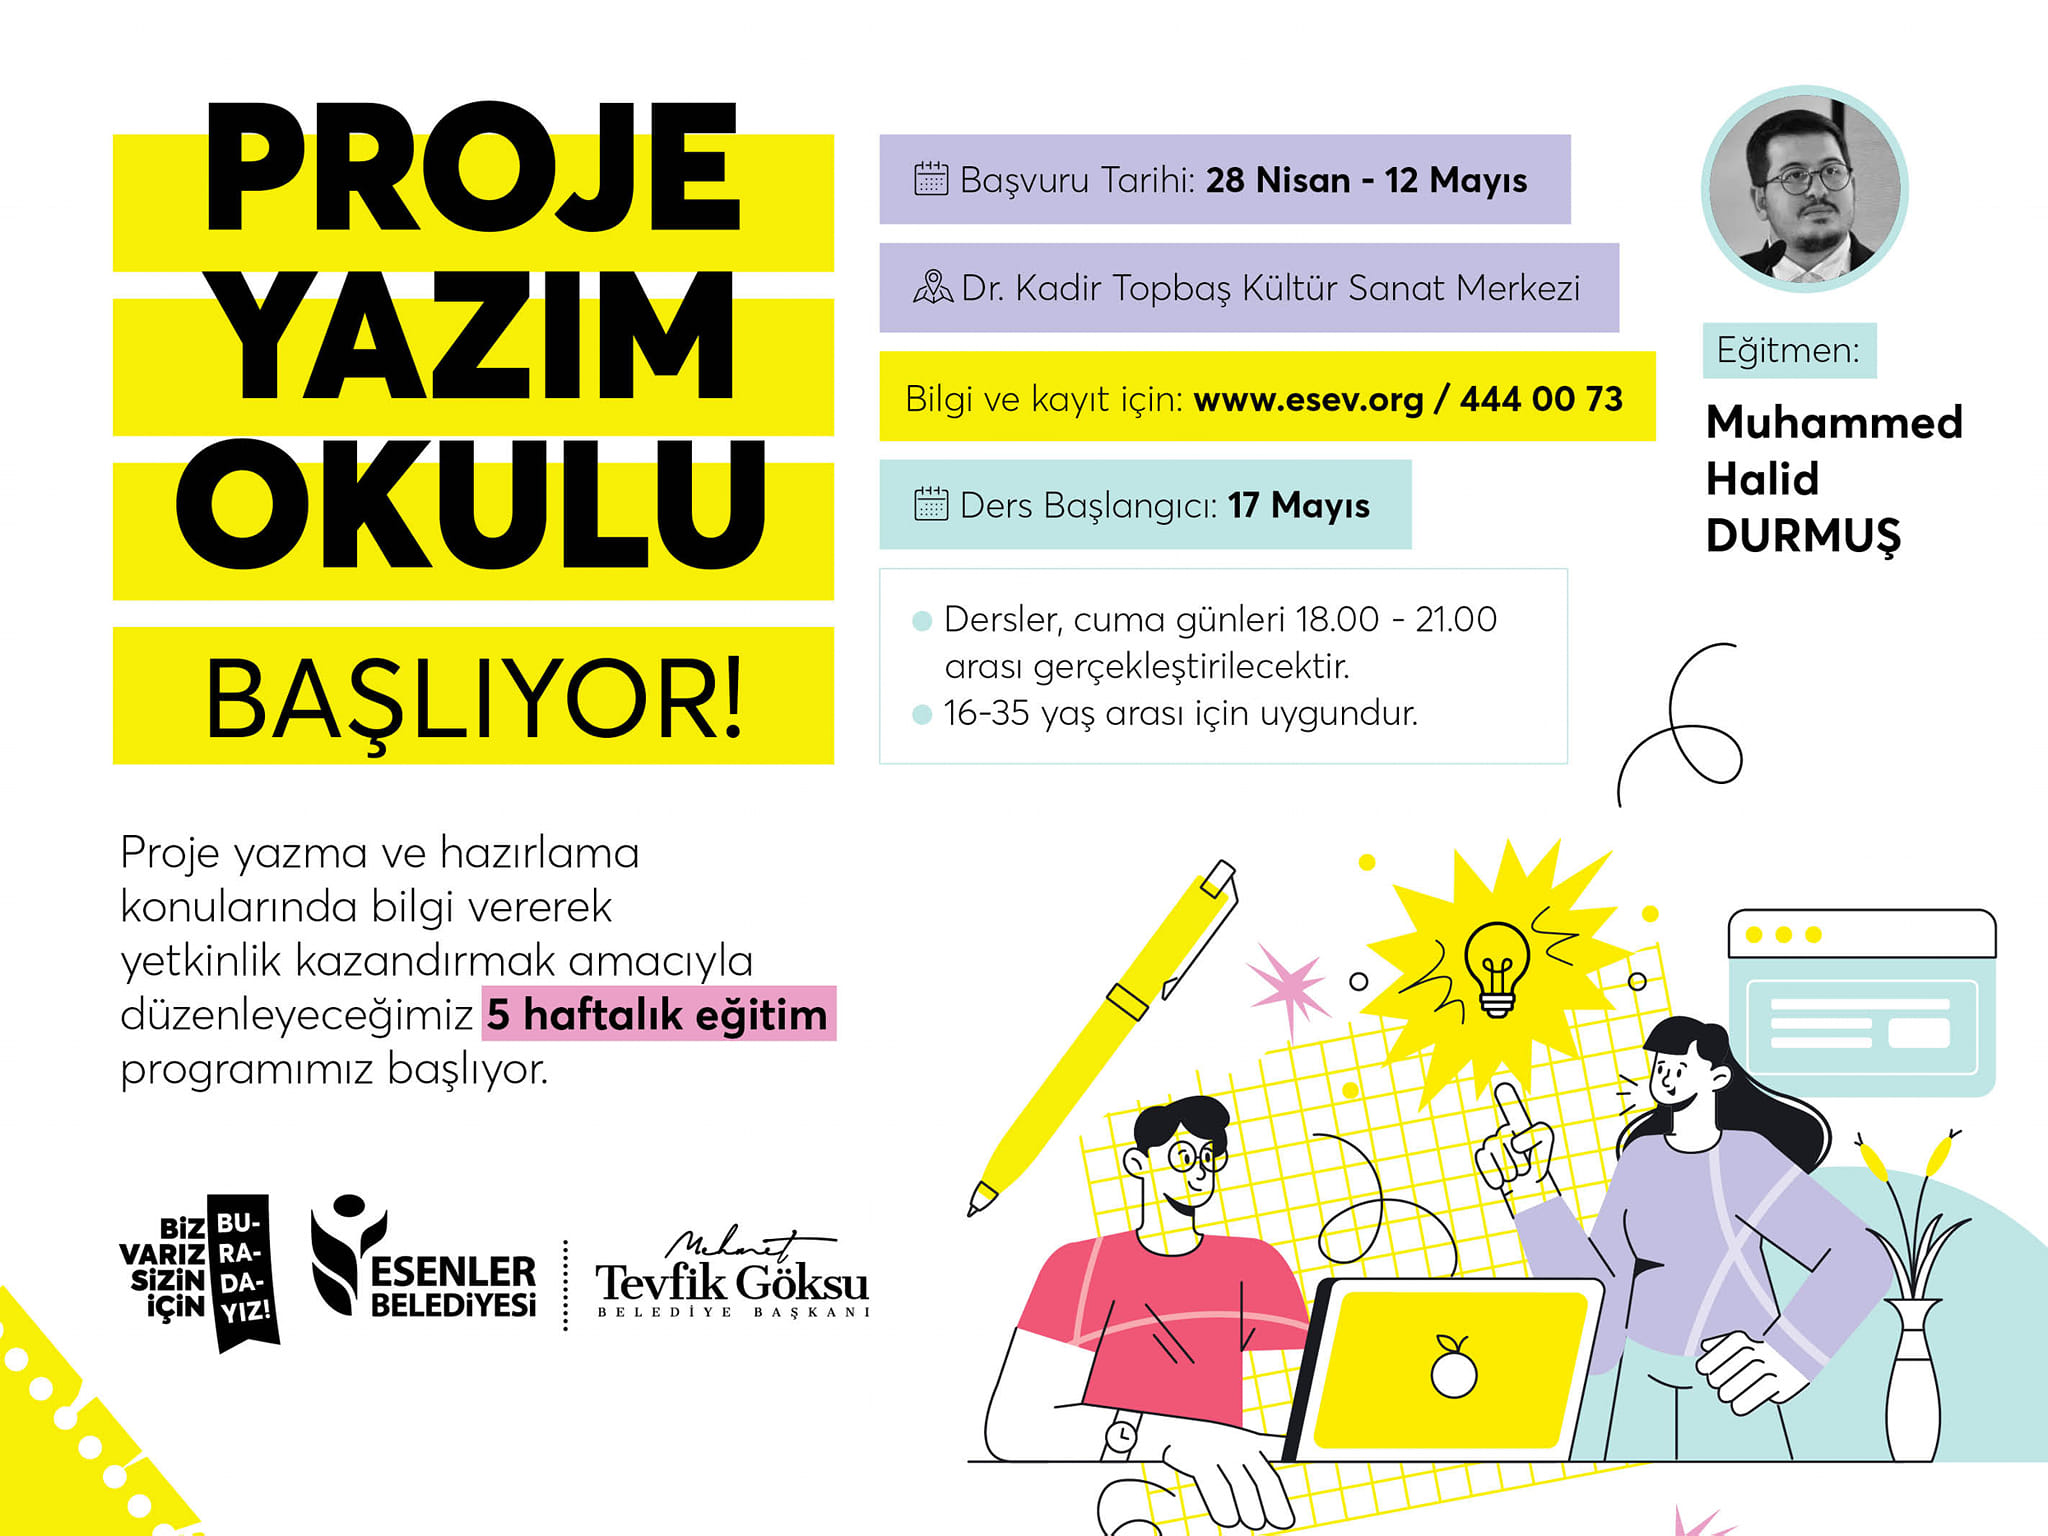 Esenler'de Gençlere Yönelik "Proje Yazım Okulu" Başlatılıyor